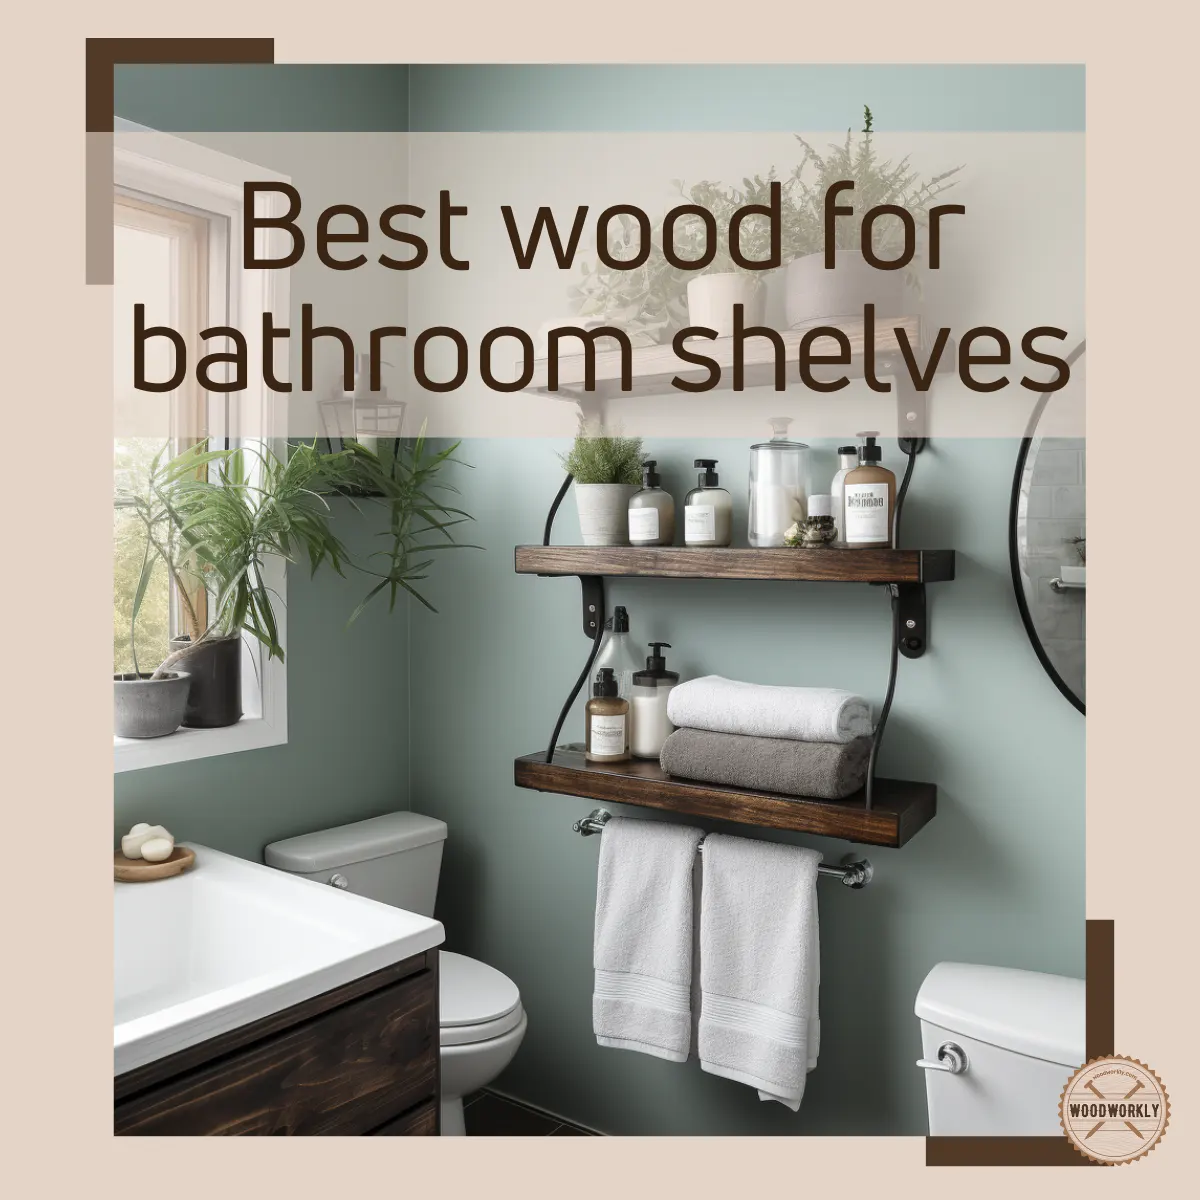 Best wood for bathroom shelves